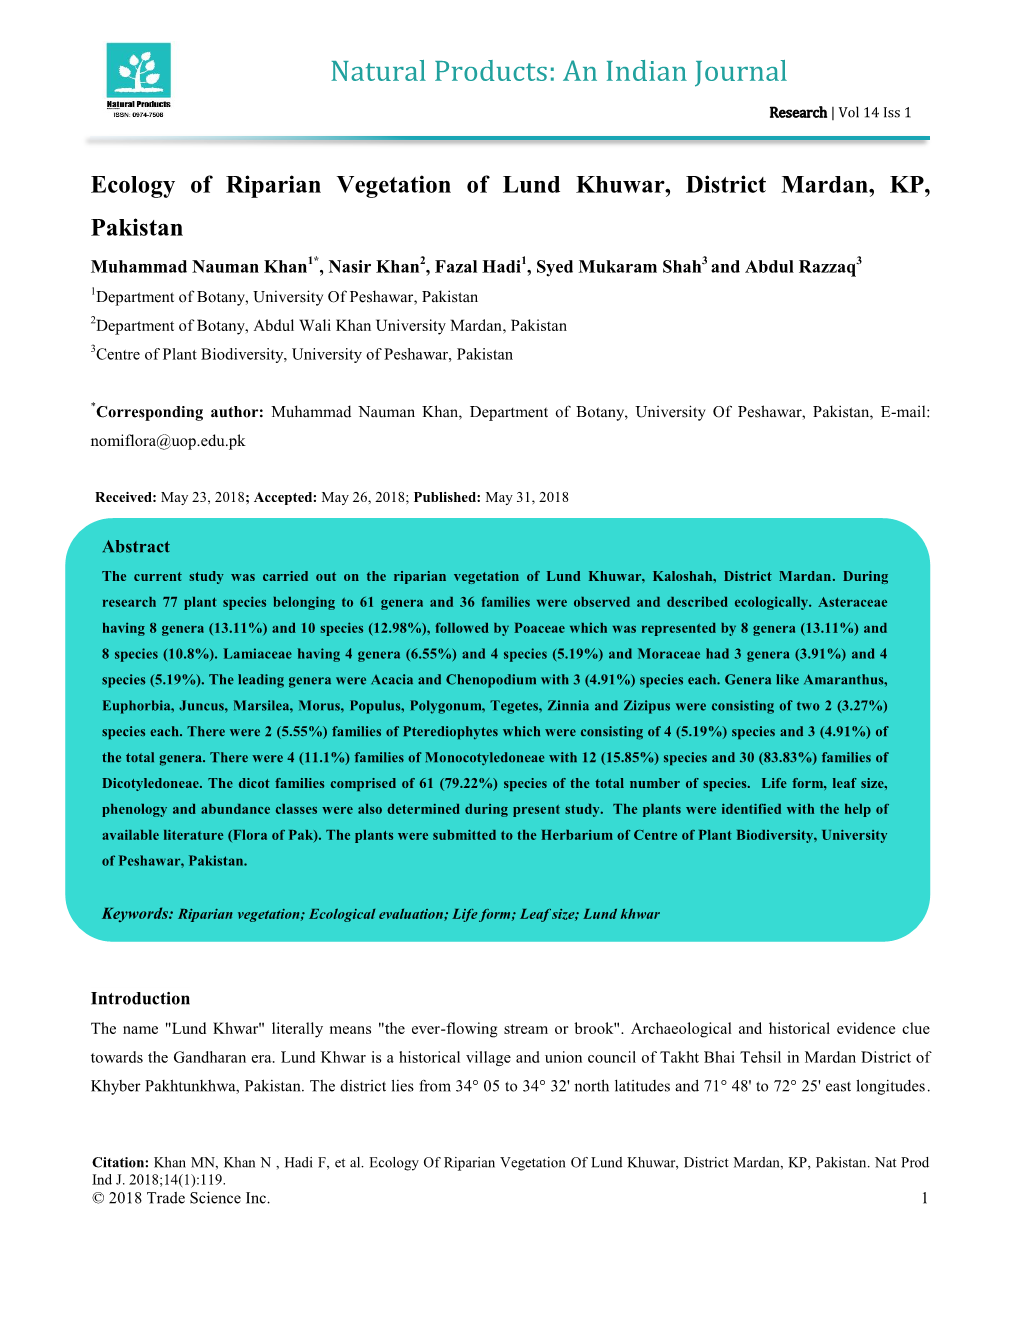 Ecology of Riparian Vegetation of Lund Khuwar, District Mardan, KP